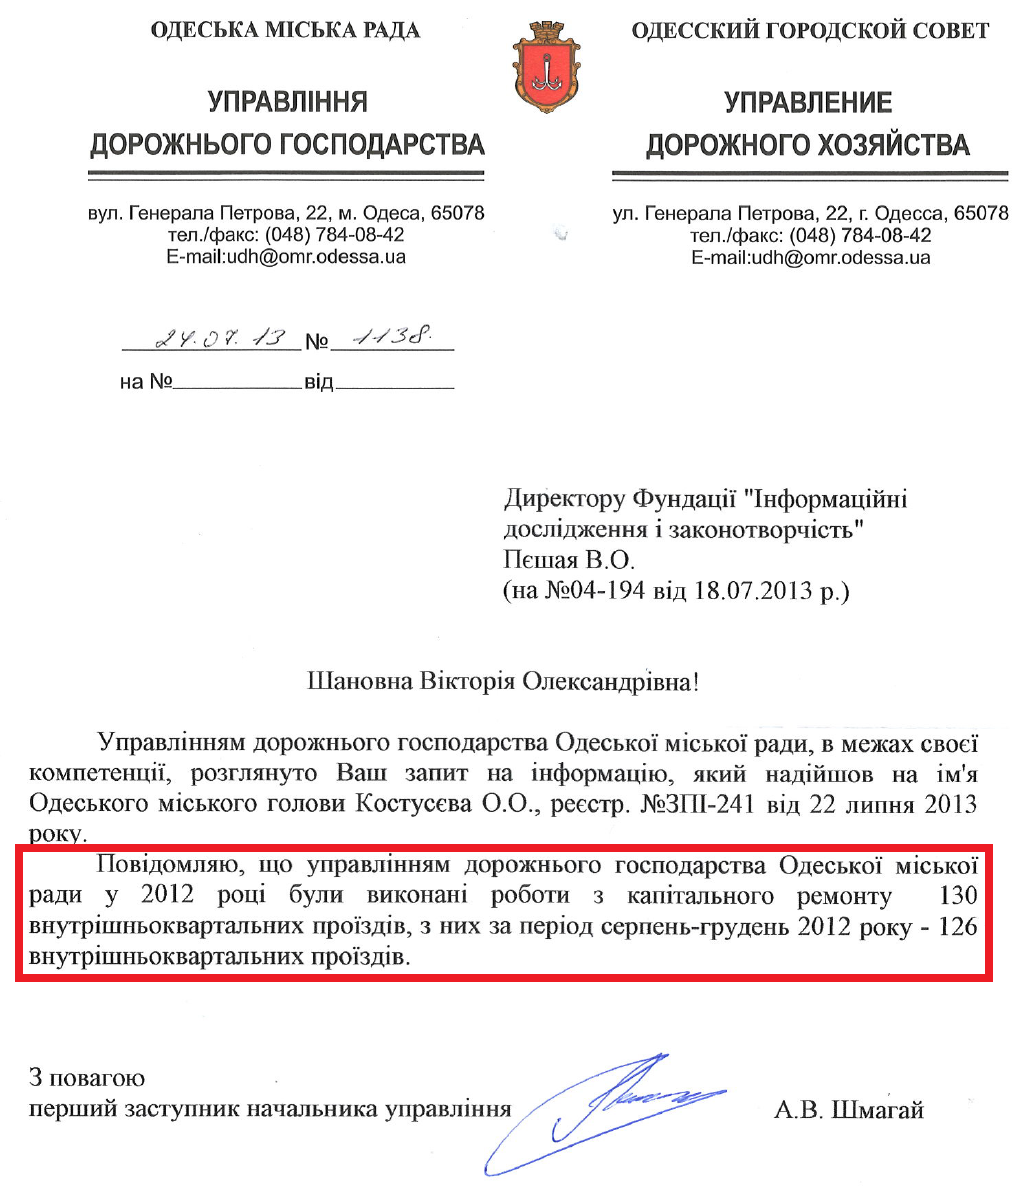 Лист Першого заступника начальника Управління дорожнього господарства Одеської міської ради А.В.Шмагая від 24 липня 2013 року